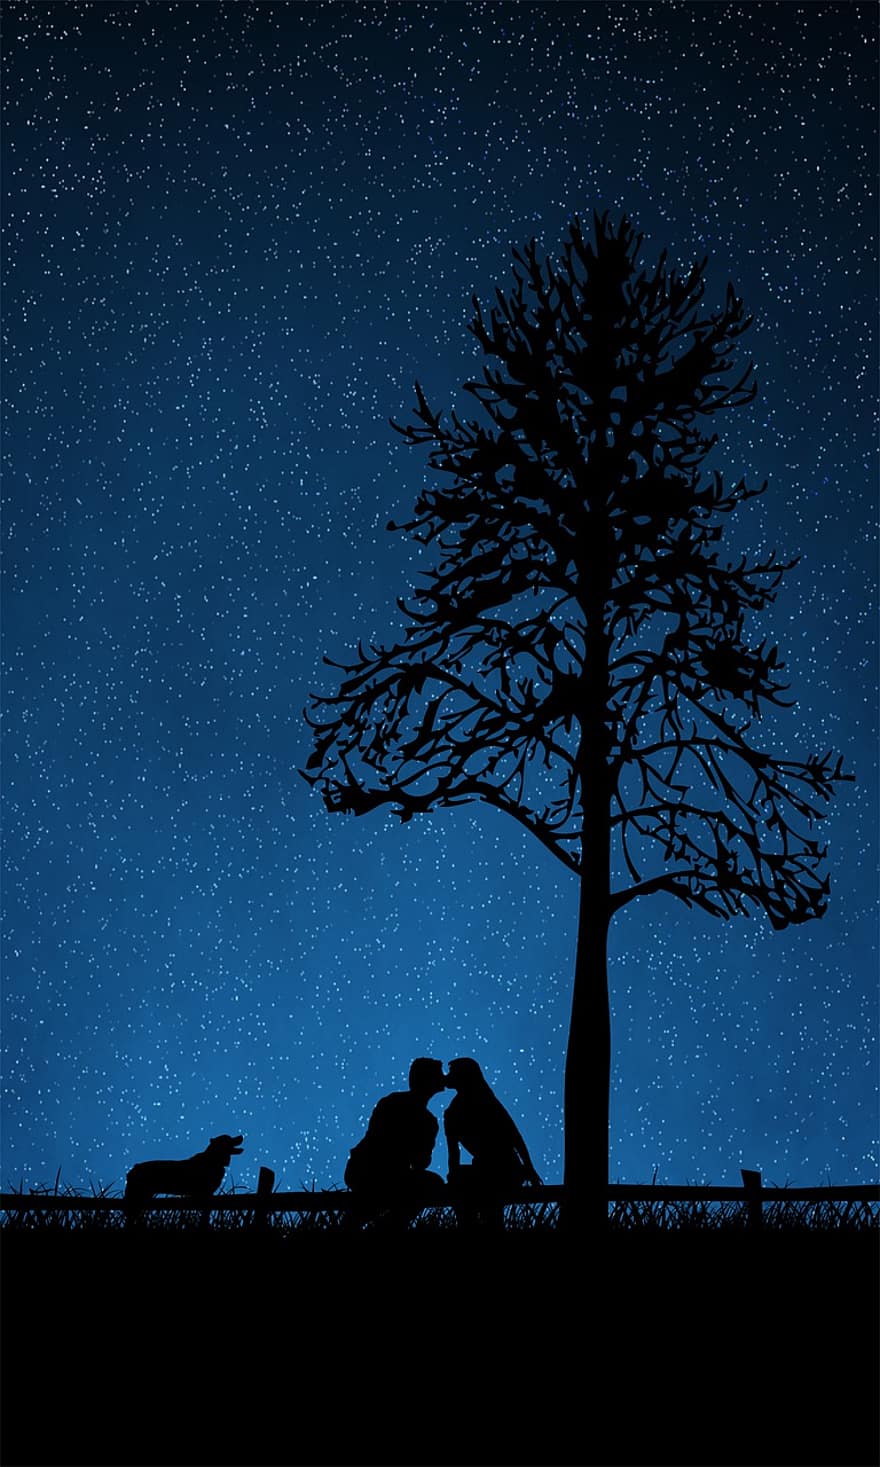 çift, alan, ağaç, köpek, gece, yıldızlı gökyüzü, Aşk, Öpücükler, romantik, damatların, duvar kağıdı